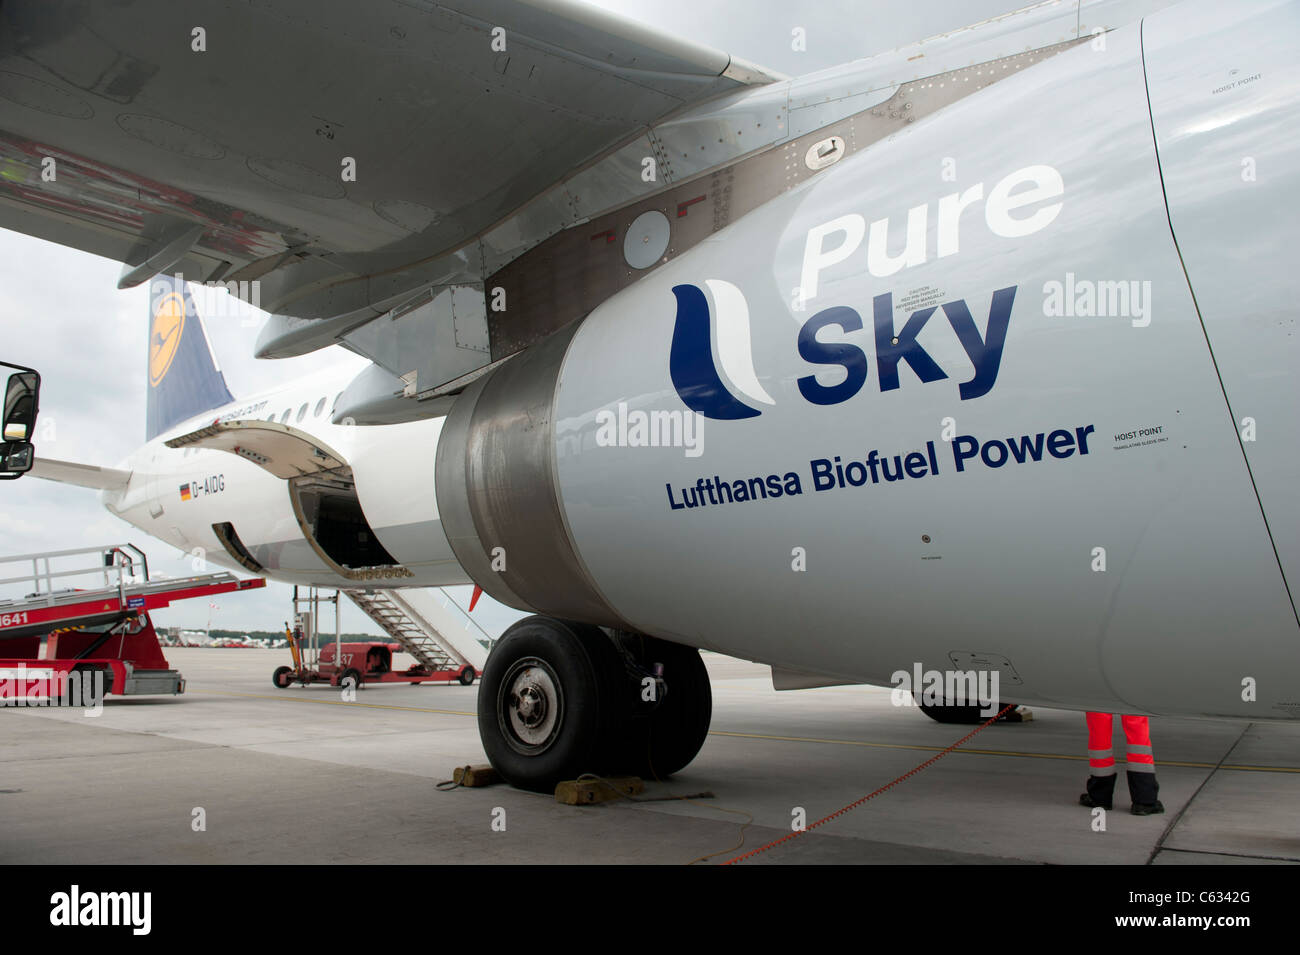 DEUTSCHLAND Flughafen Hamburg, Lufthansa Airbus A321 hat an einem Flugzeugmotor eine Mischung aus Jatropha-Öl und anderen Pflanzenölen mit reinem Sky-Biokraftstoff aufgetankt, um alternative Kraftstoffe aus nachwachsenden Rohstoffen zu nutzen Stockfoto